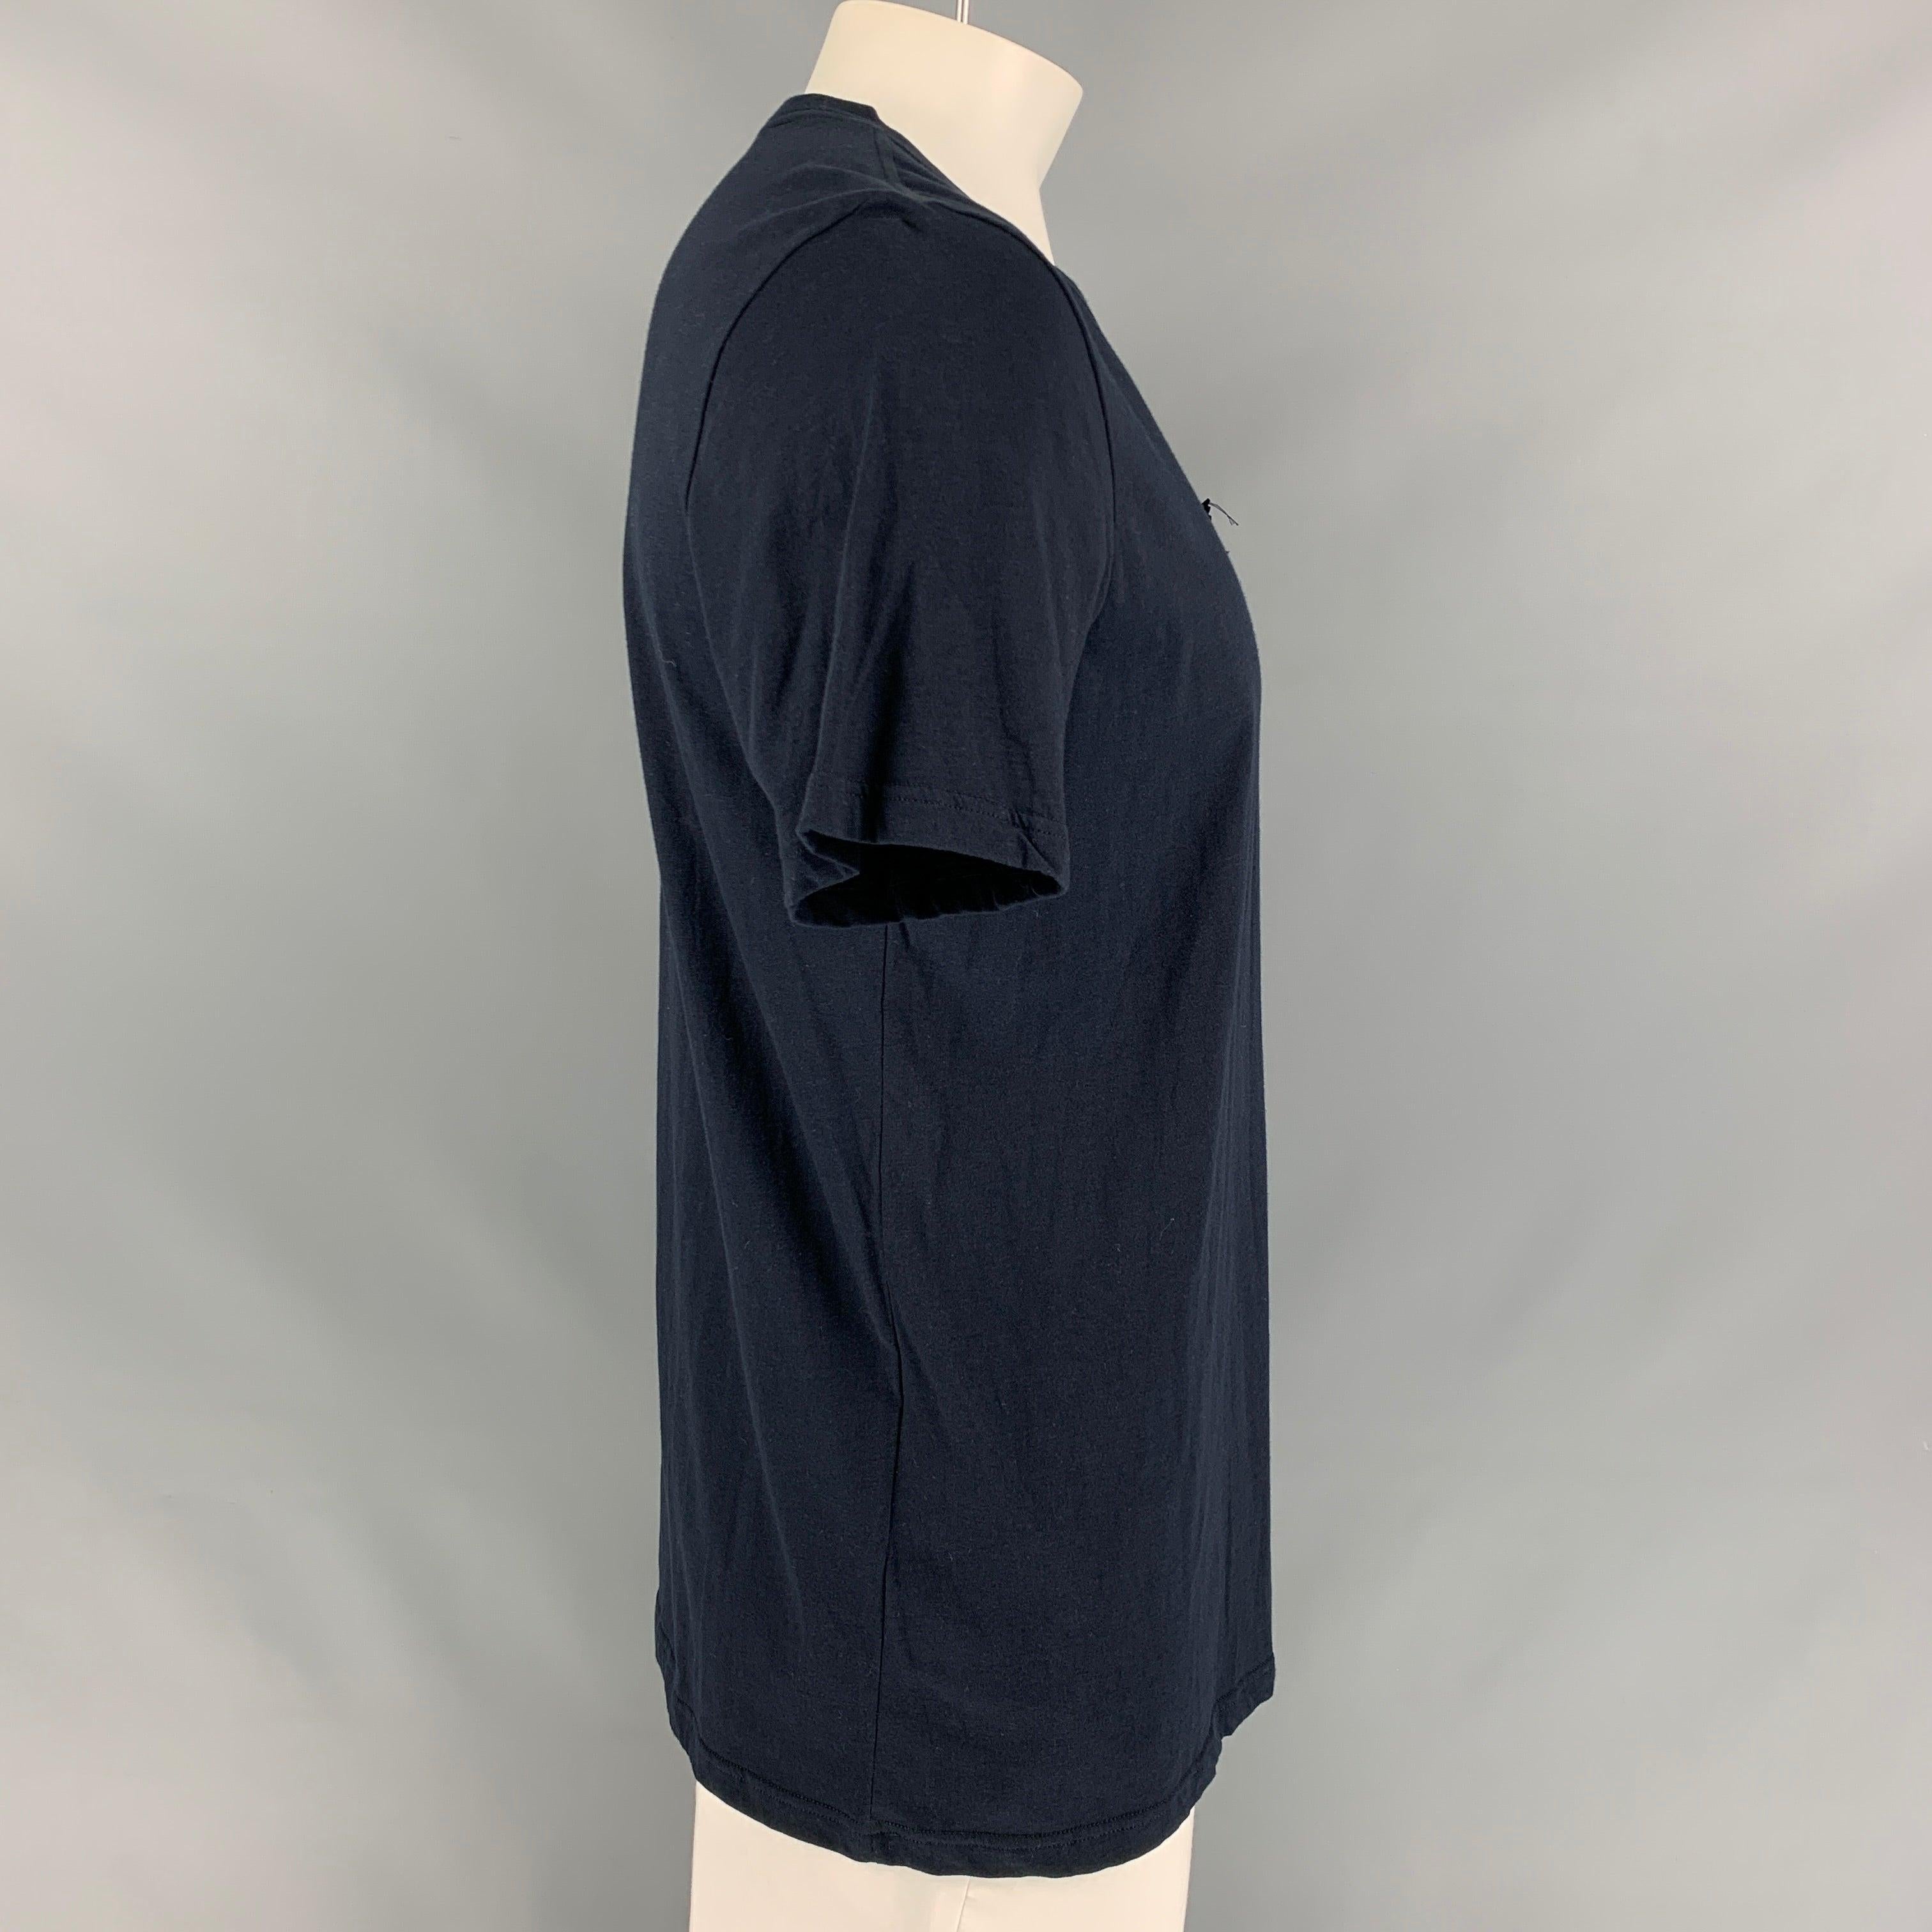 Le t-shirt PRORSUM de Burberry est en coton bleu marine et présente un nœud de médaille et un col ras du cou.
Très bien
Etat d'occasion.  

Marqué :   XL 

Mesures : 
 
Épaule : 19 pouces  Poitrine : 44 pouces  Manche : 9,5 pouces  Longueur : 29